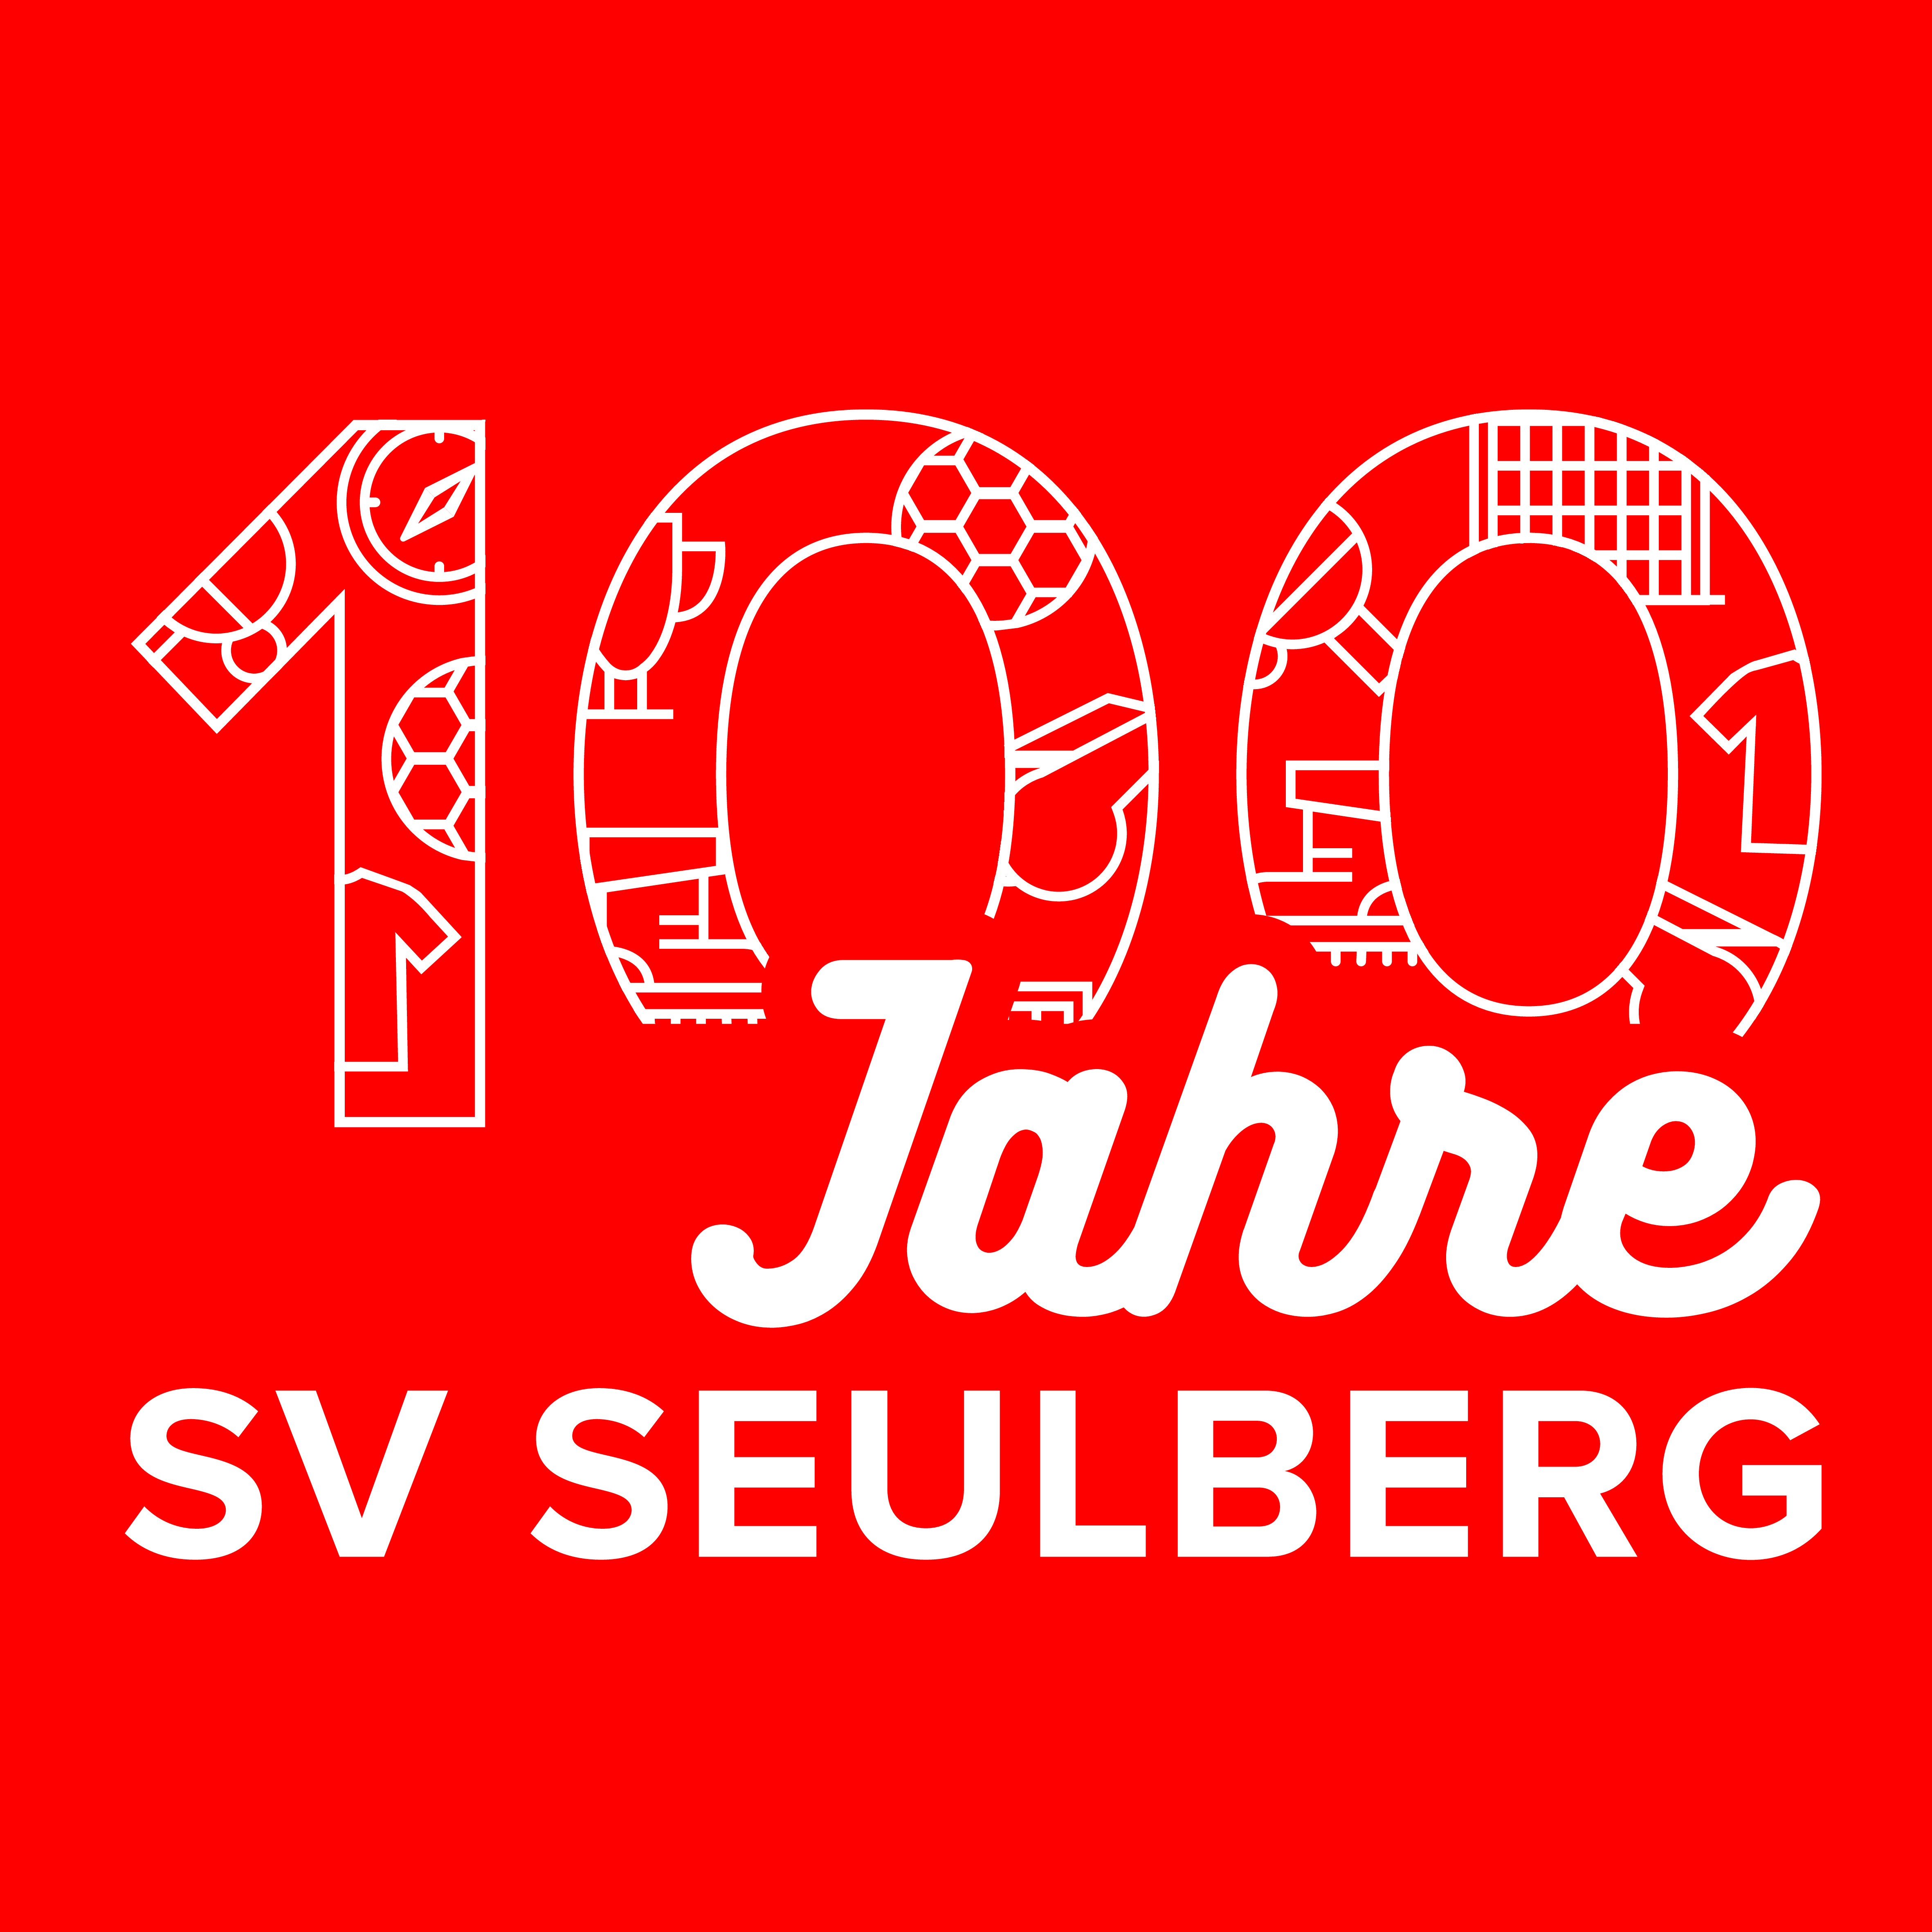 100 Jahre Logo